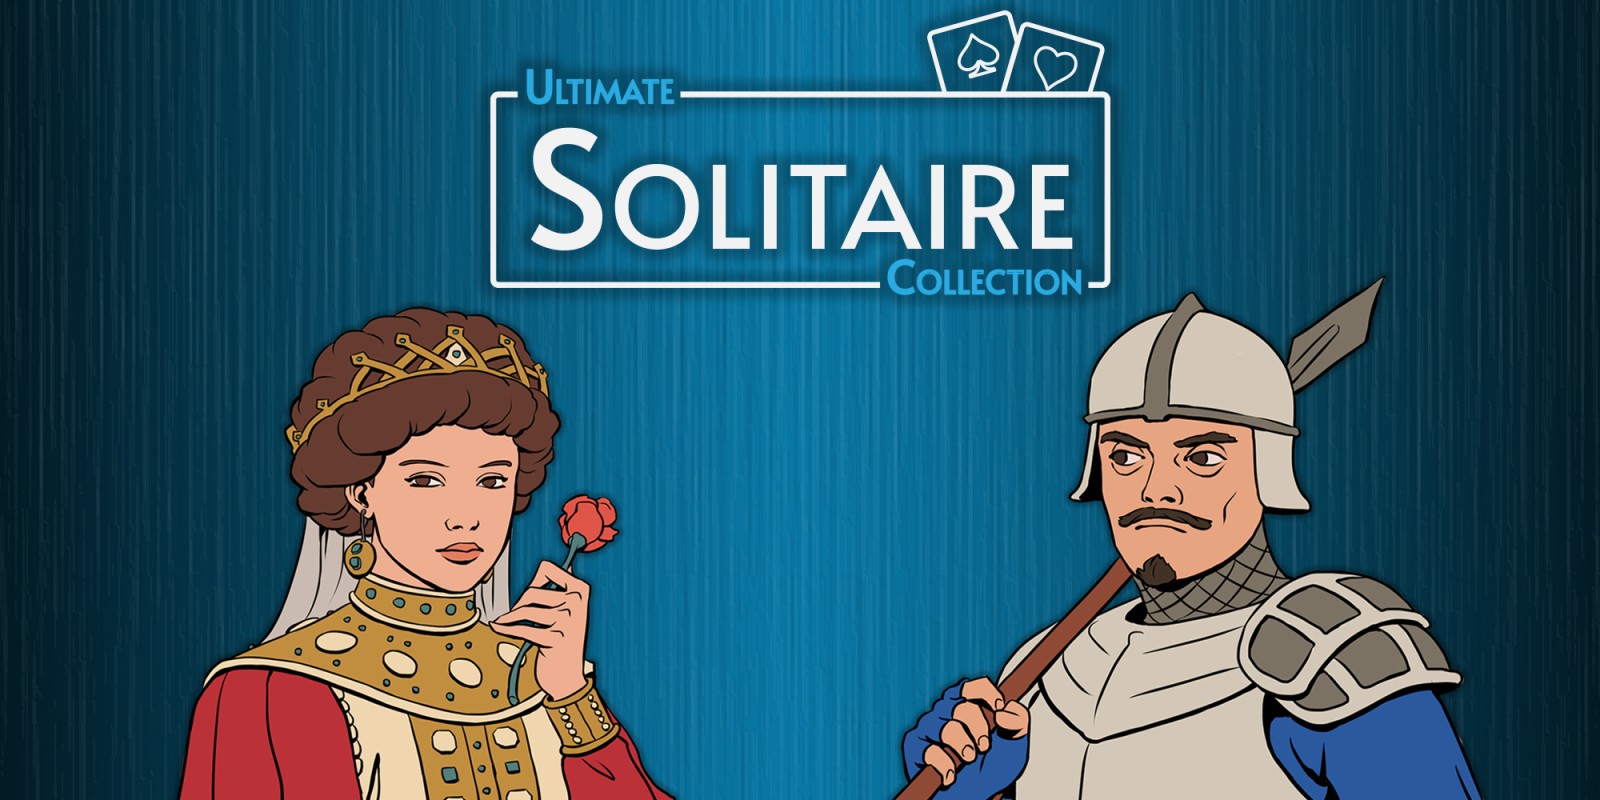 Solitaire, Aplicações de download da Wii U, Jogos